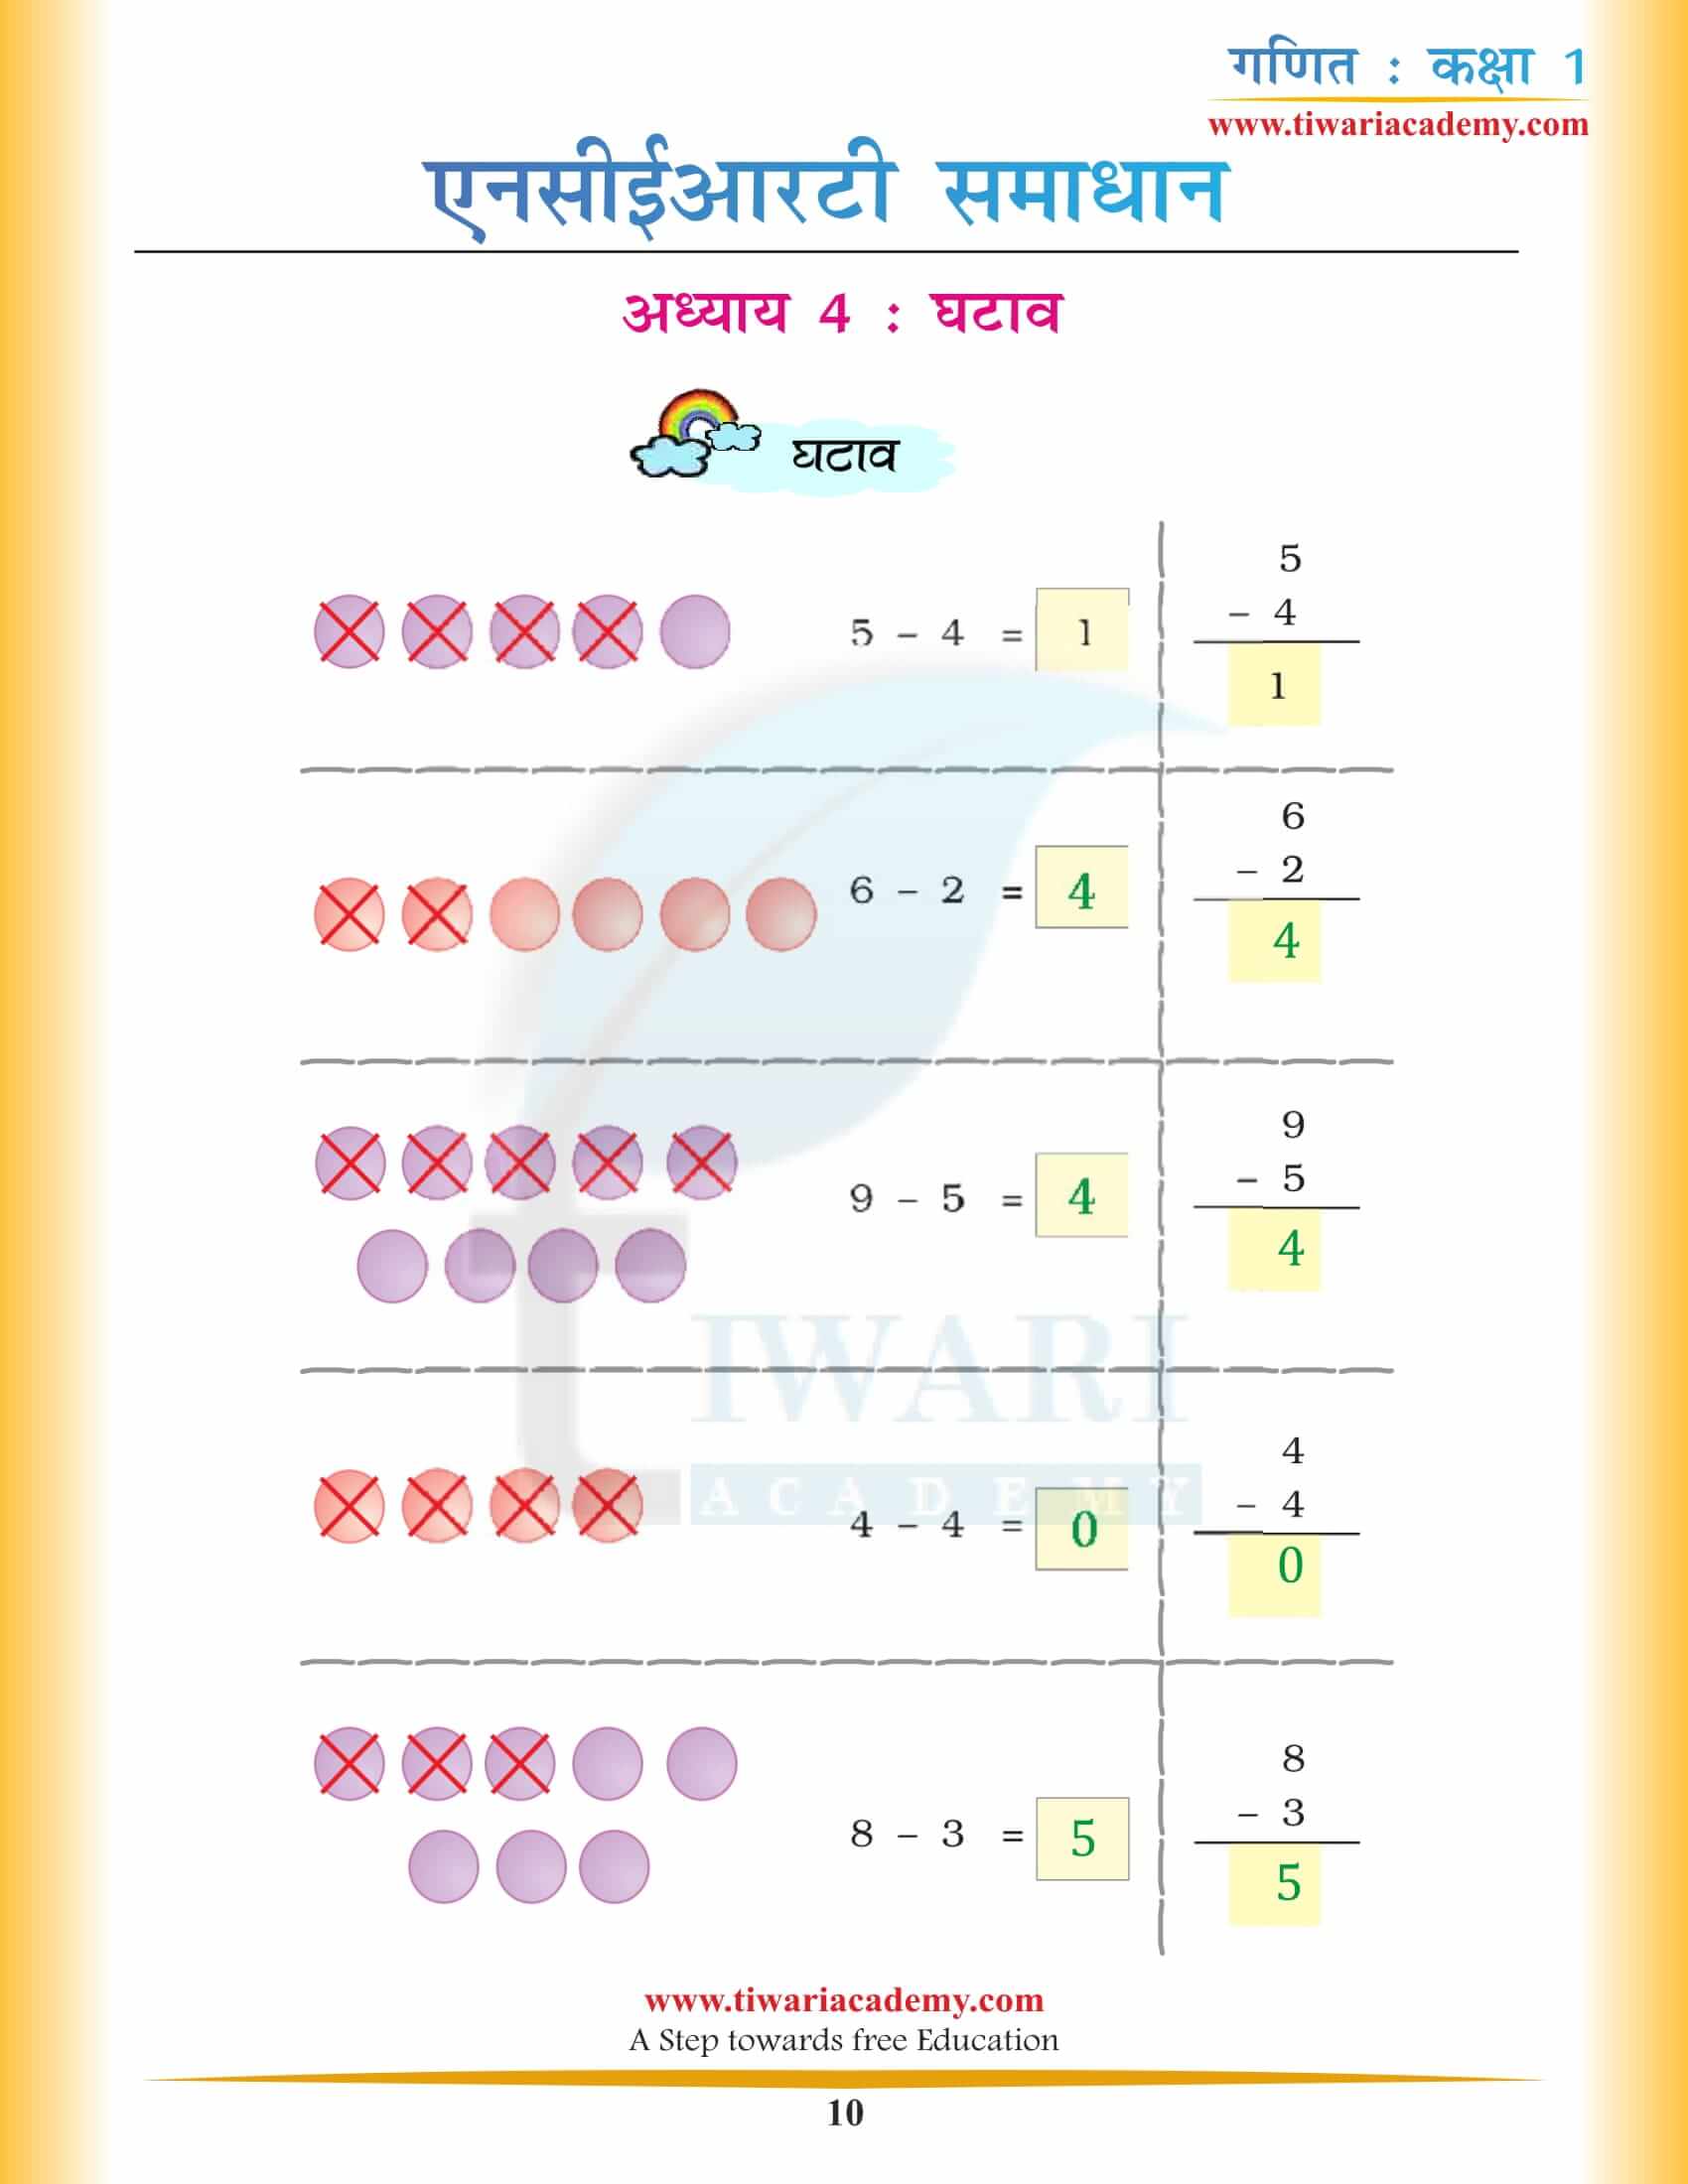 कक्षा 1 गणित अध्याय 4 एनसीईआरटी समाधान हिंदी मीडियम में